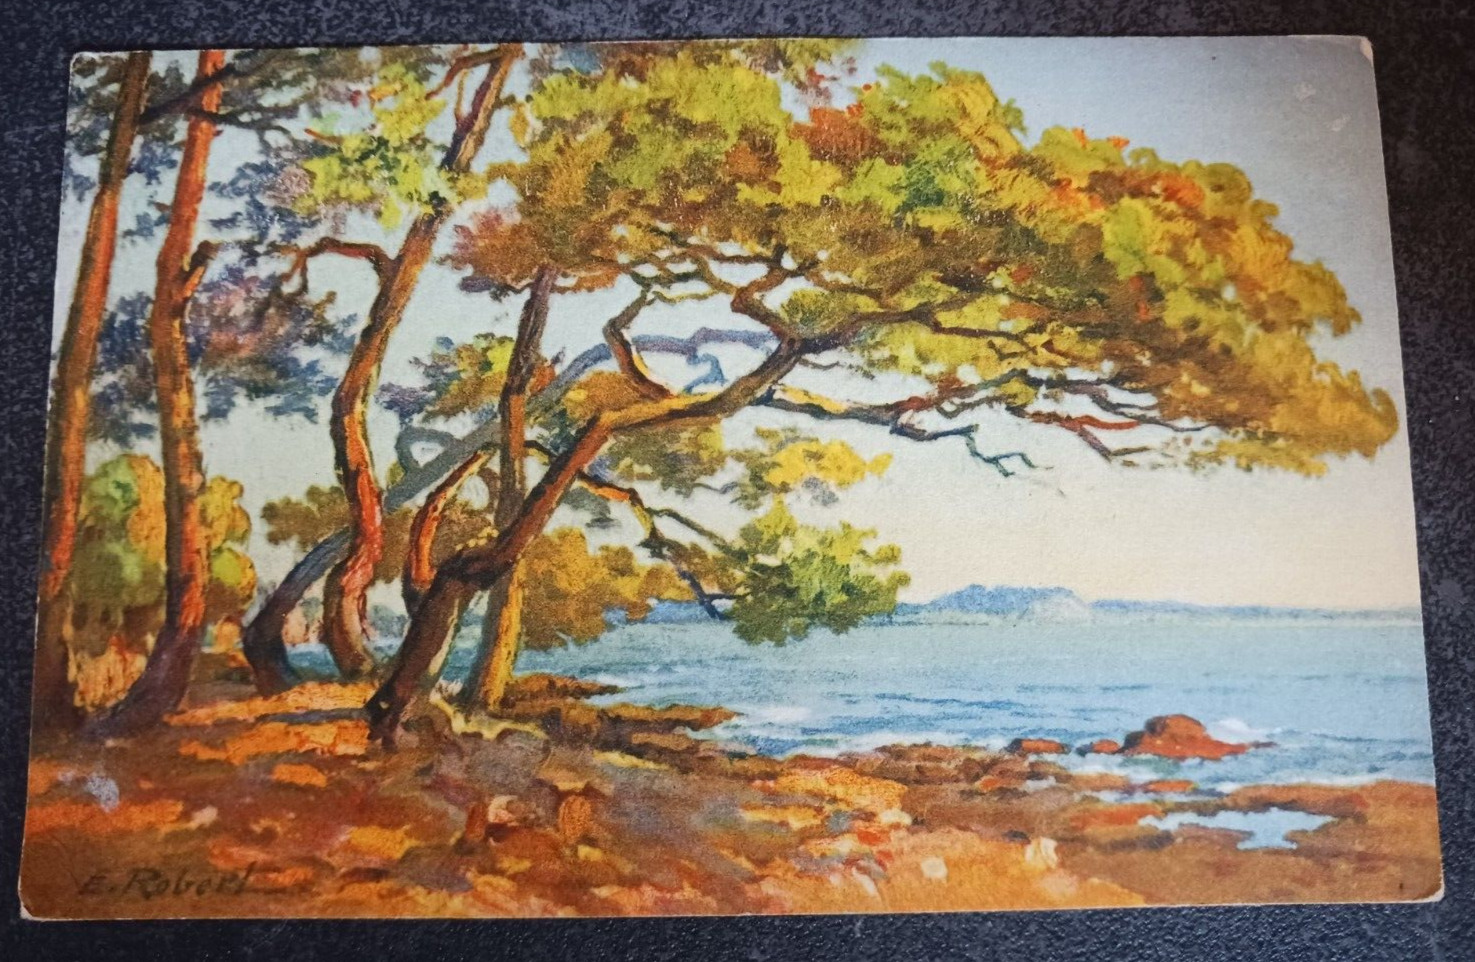 vtg postcard E. ROBERT Switzerland ocean scenery watercolor art unposted